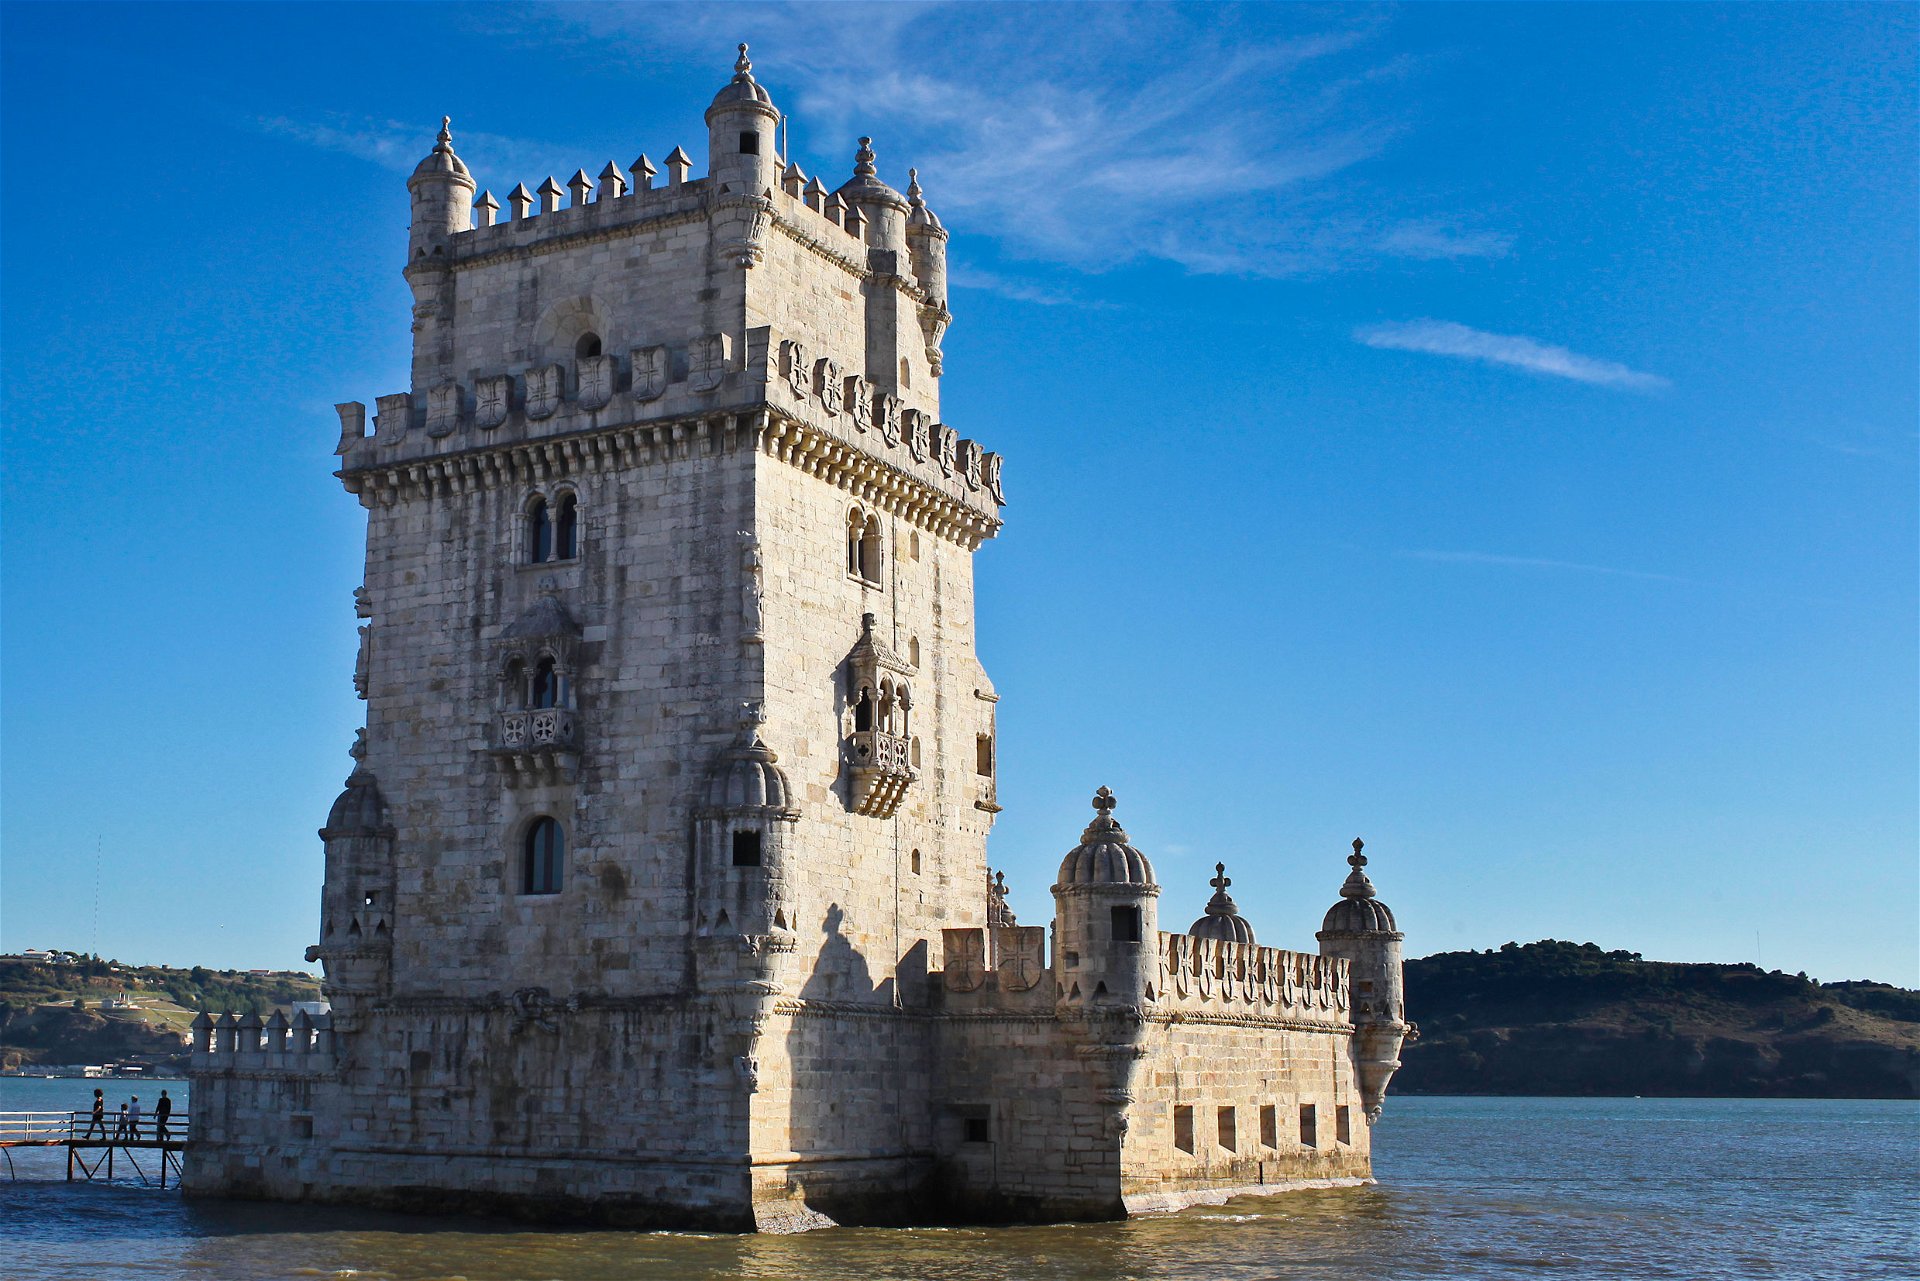 Die Torre de Belém ist eines der bekanntesten Wahrzeichen Lissabons.